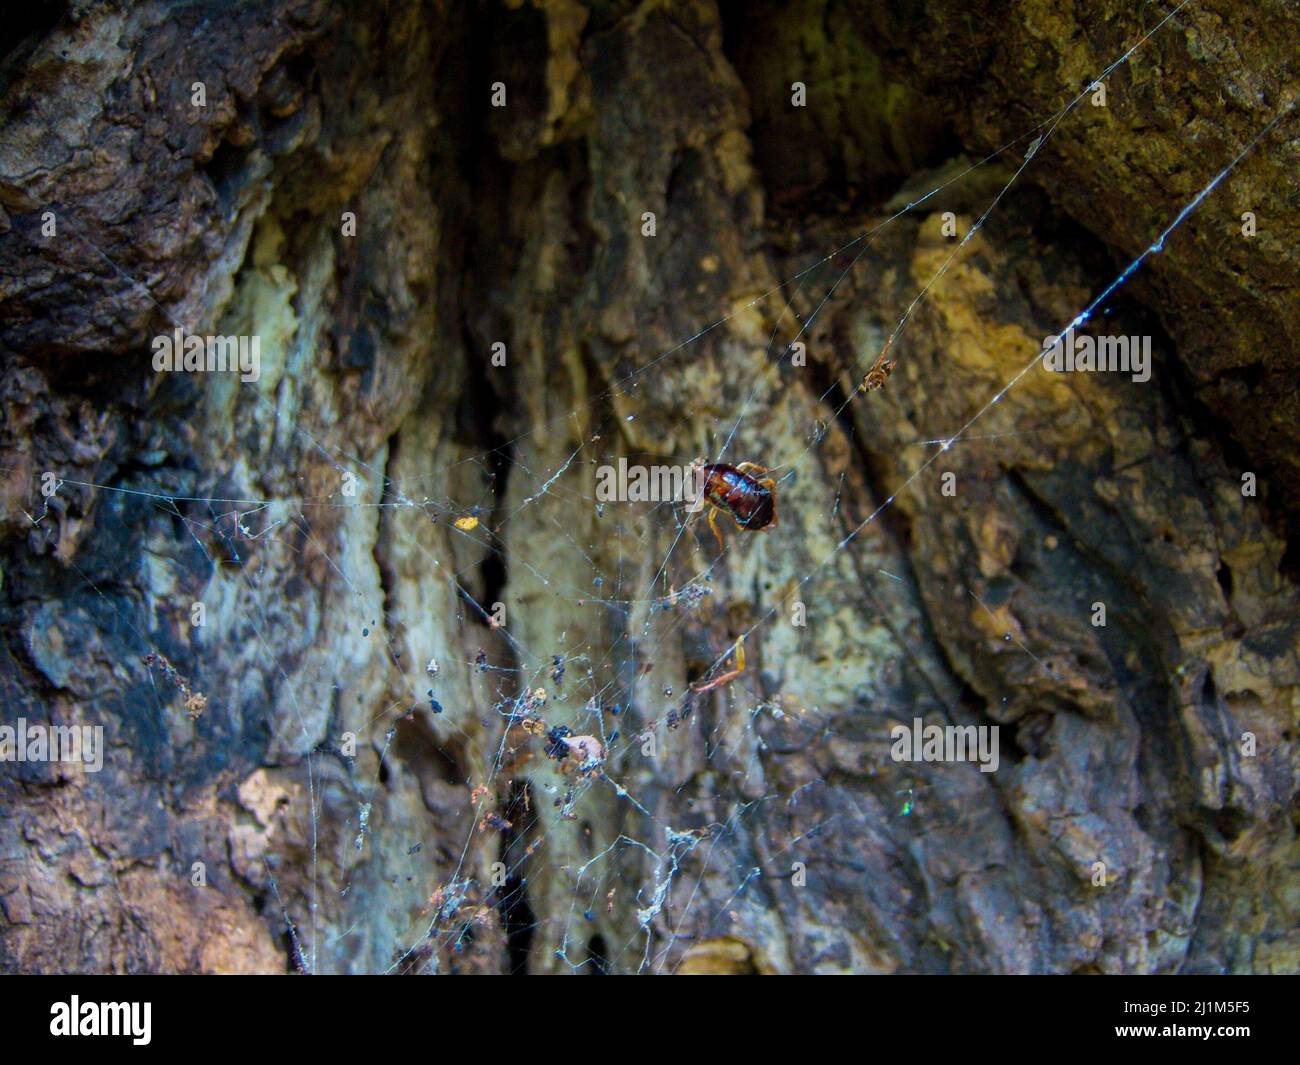 Insecto en la tela de araña delante del fondo de la roca. Naturaleza al aire libre. Foto de stock